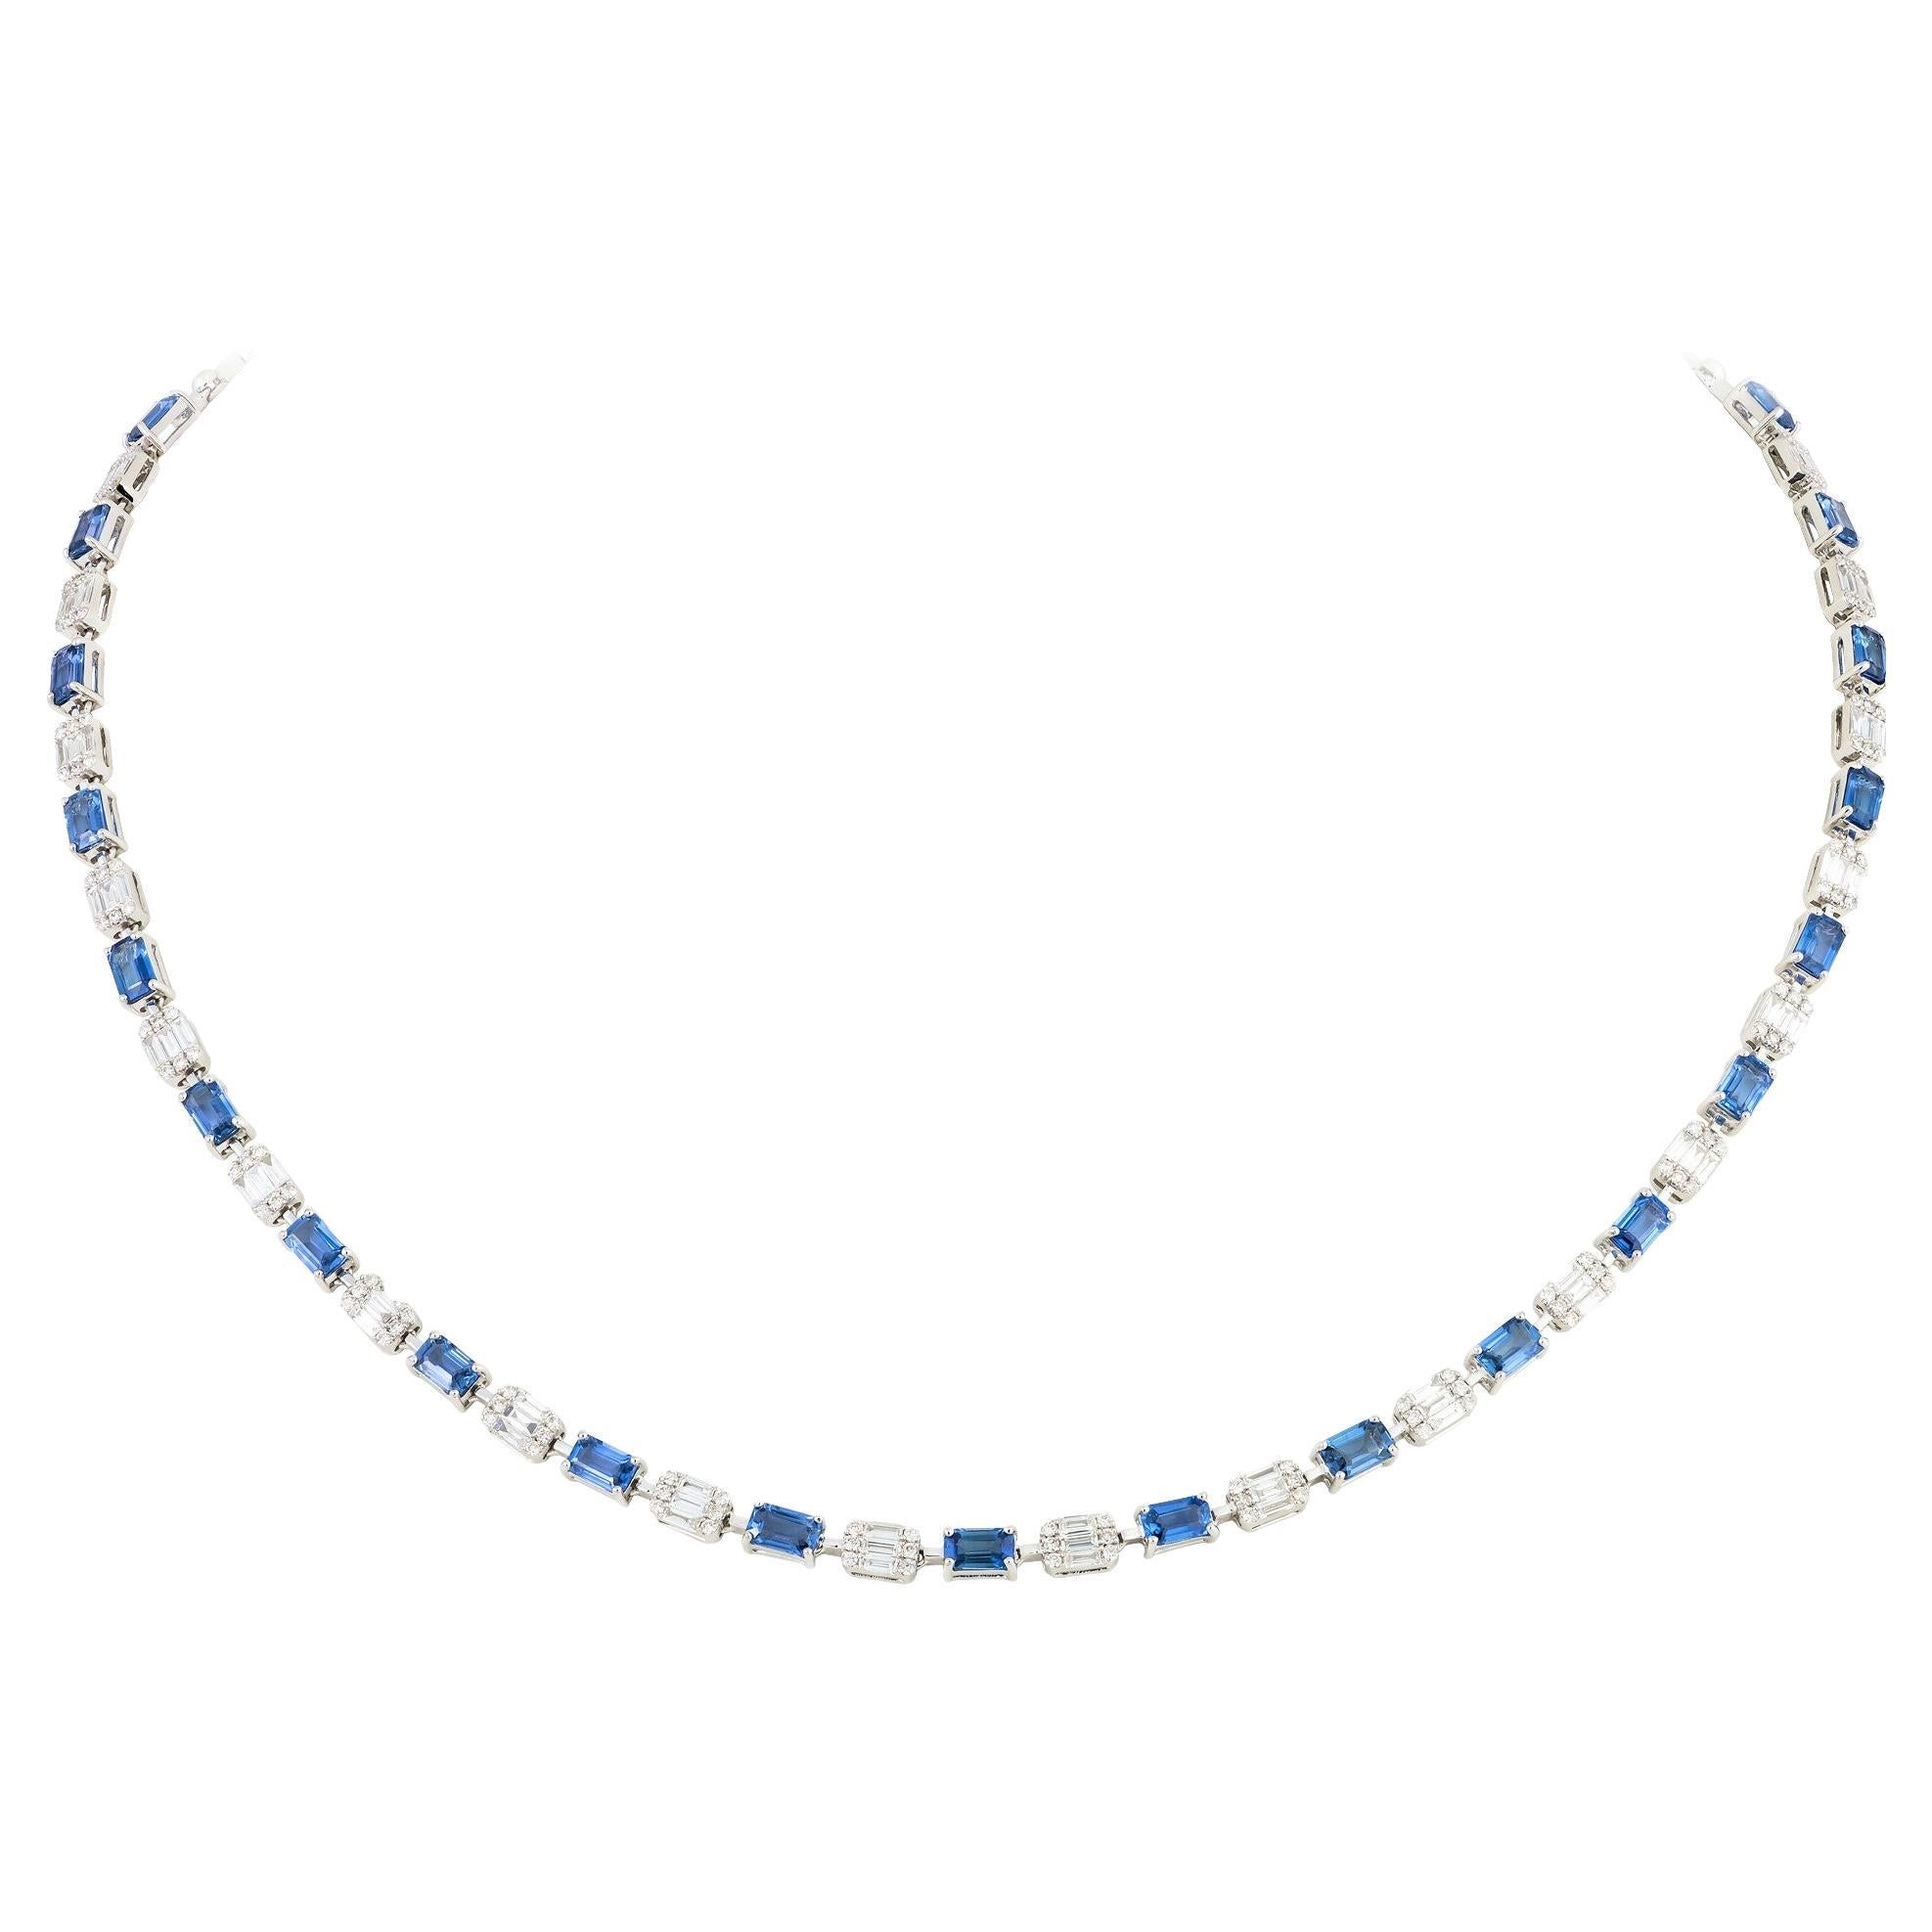 Collier fantaisie de 22 500 $ avec grand saphir bleu fantaisie pailleté et diamants, 18 carats, neuf avec étiquette